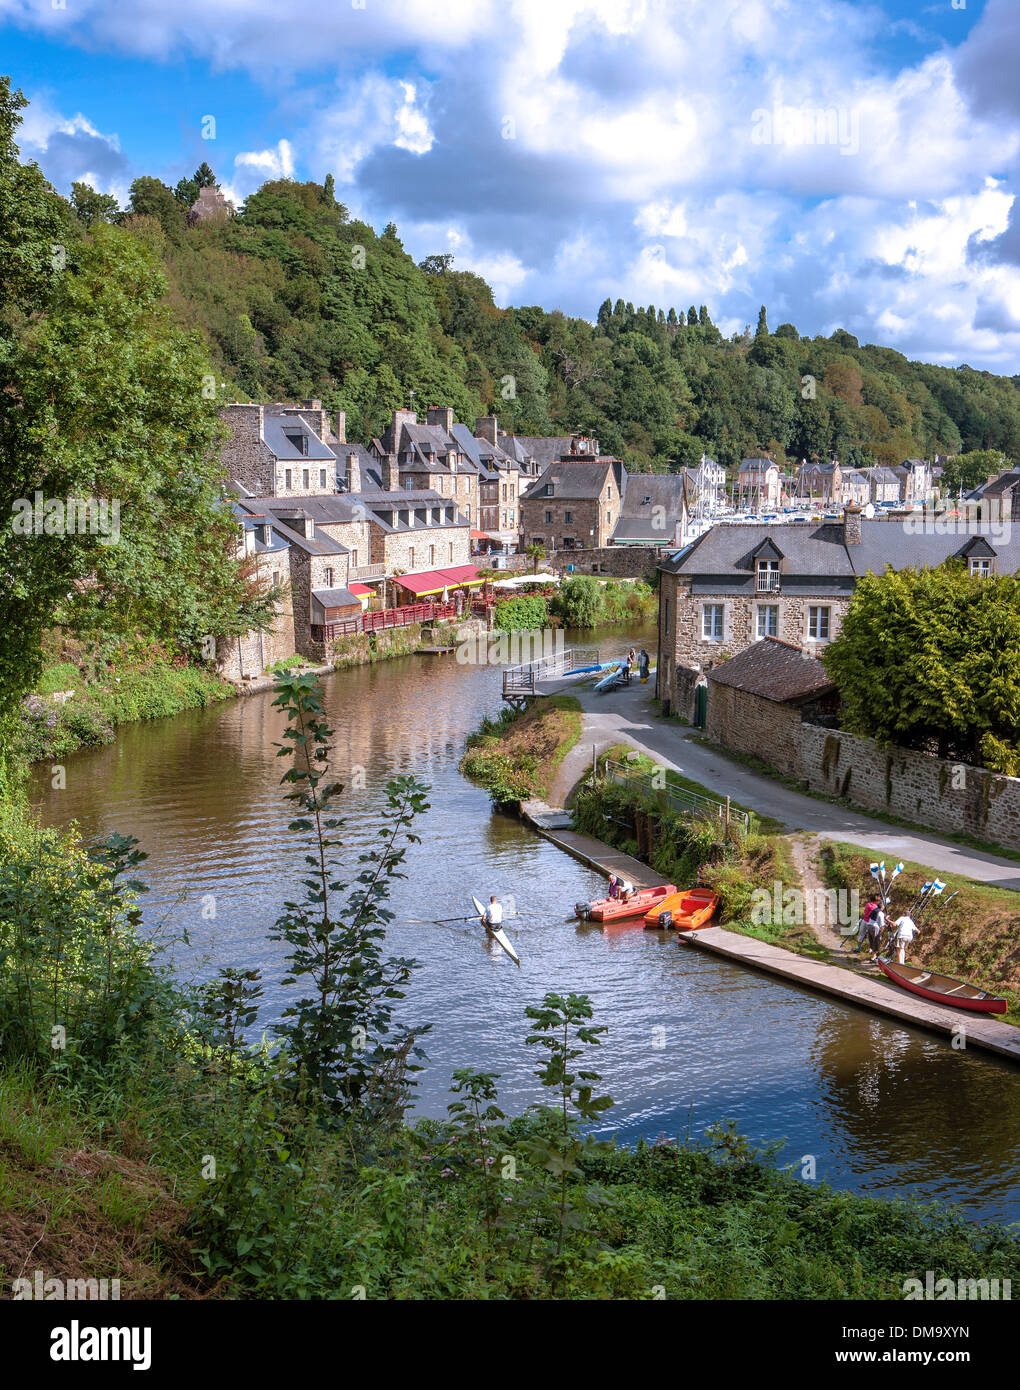 Der Fluss Stadt Dinan in der Bretagne, einer Region an den Atlantik und Ärmelkanal Küsten im Westen Frankreichs am Fluss Rance. Stockfoto